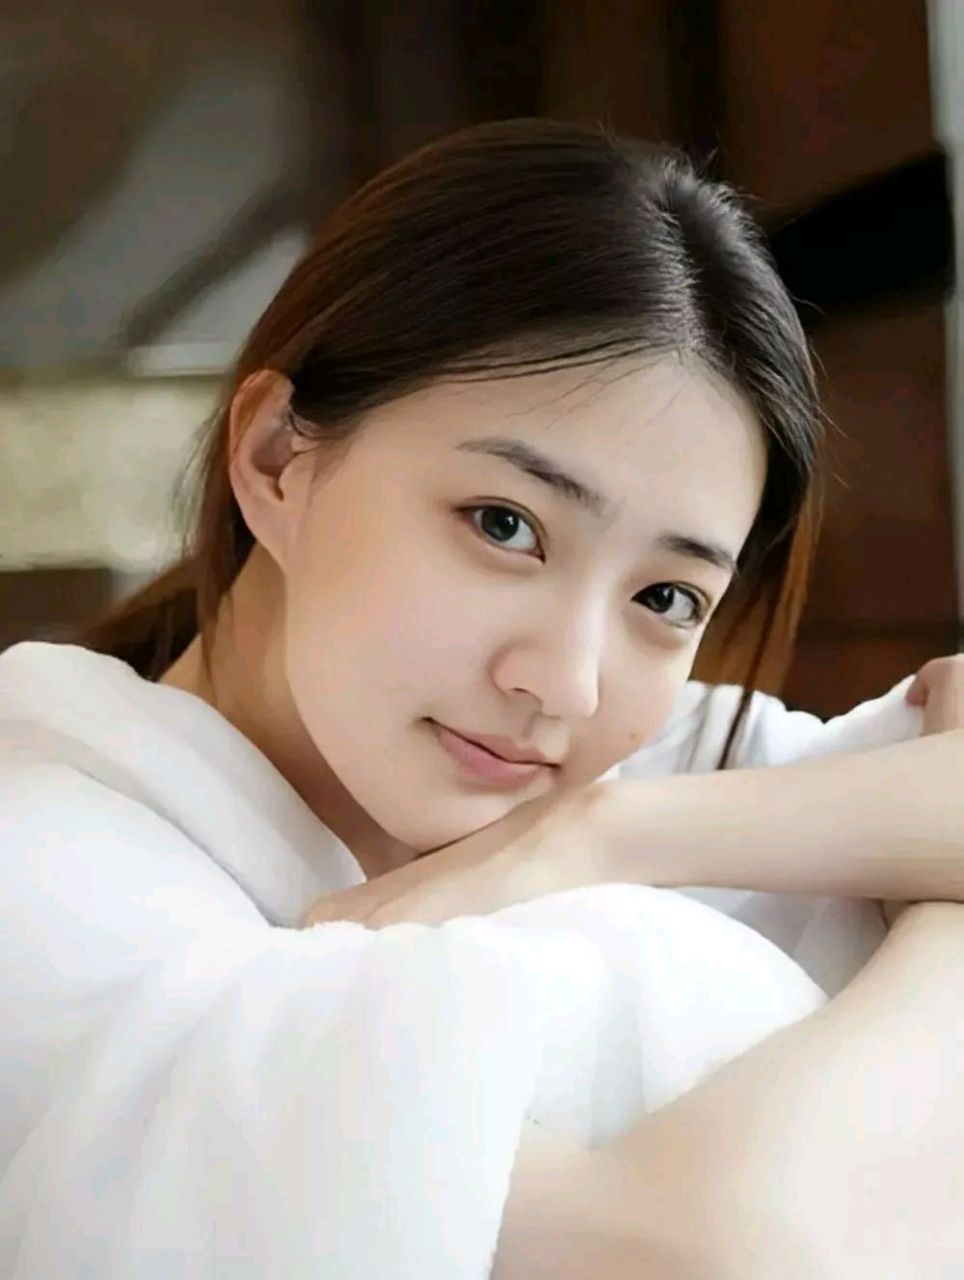 徐璐,1994年12月28日出生于内蒙古自治区呼和浩特市,毕业于中国人民